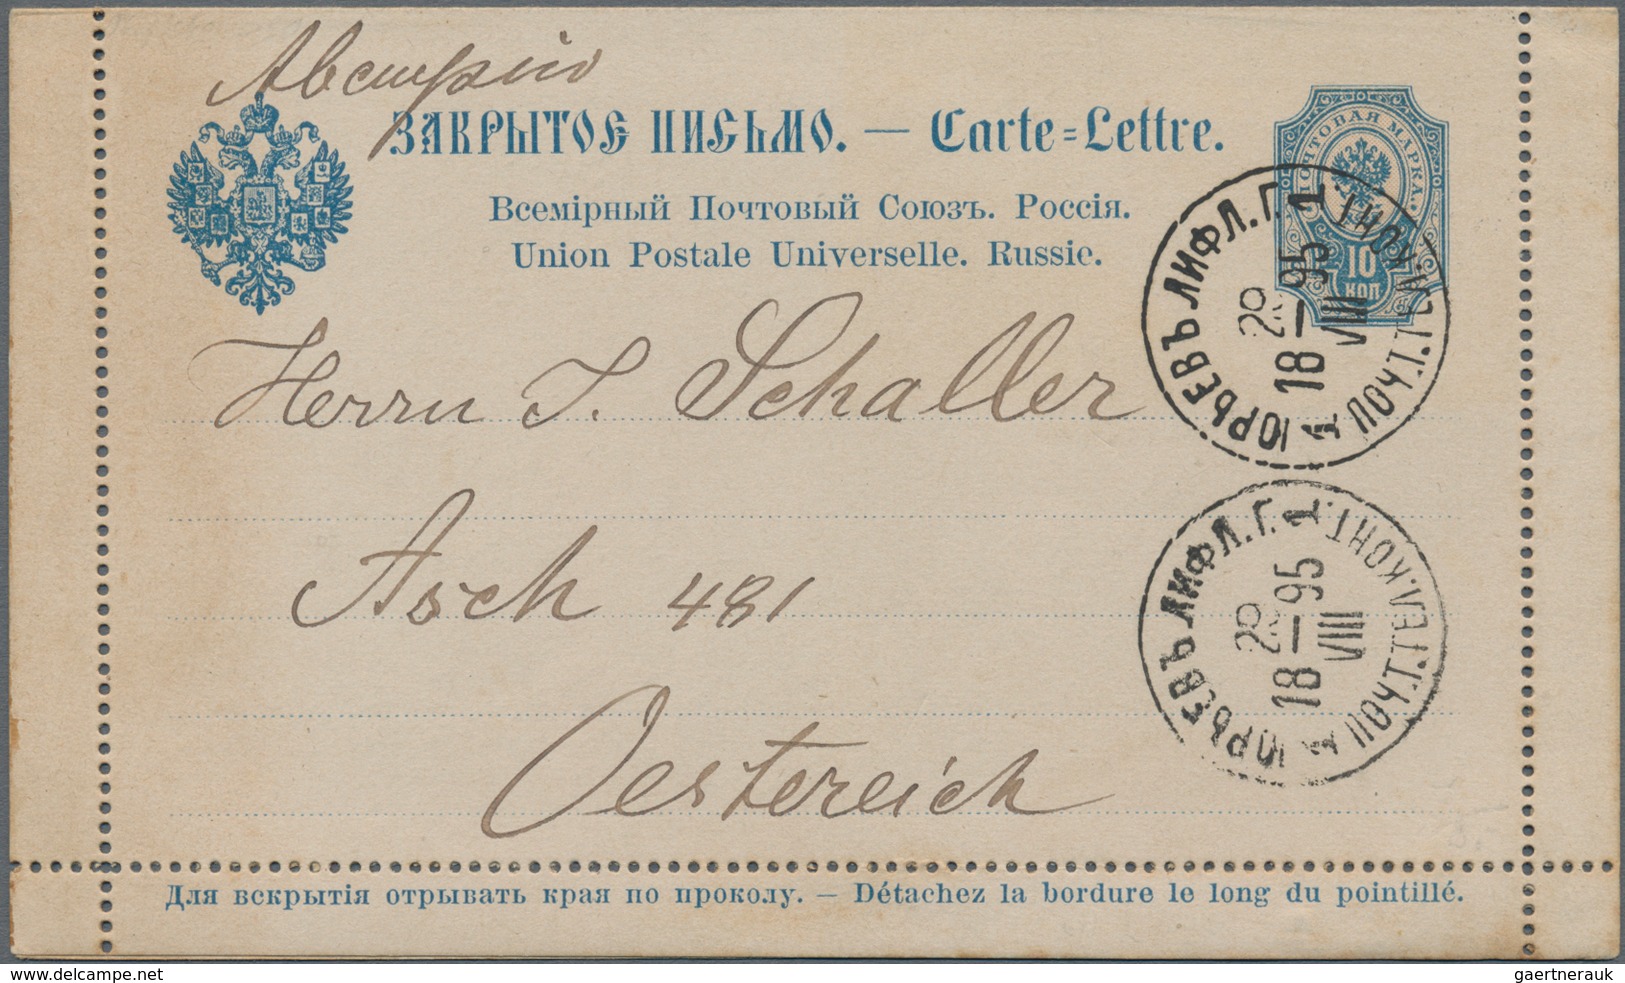 Russland - Ganzsachen: 1878/1916 holding of about 130 postal stationery postcards, envelopes, letter